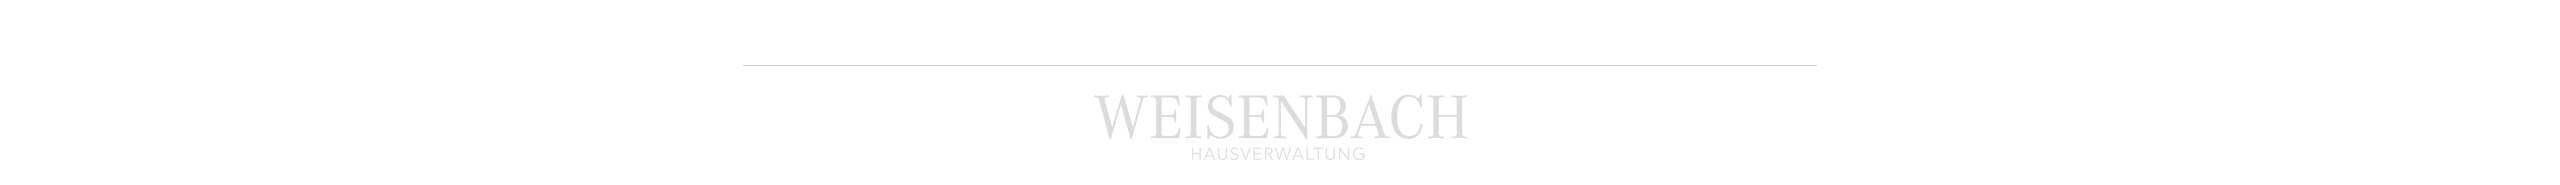 Hausverwaltung Weisenbach GmbH